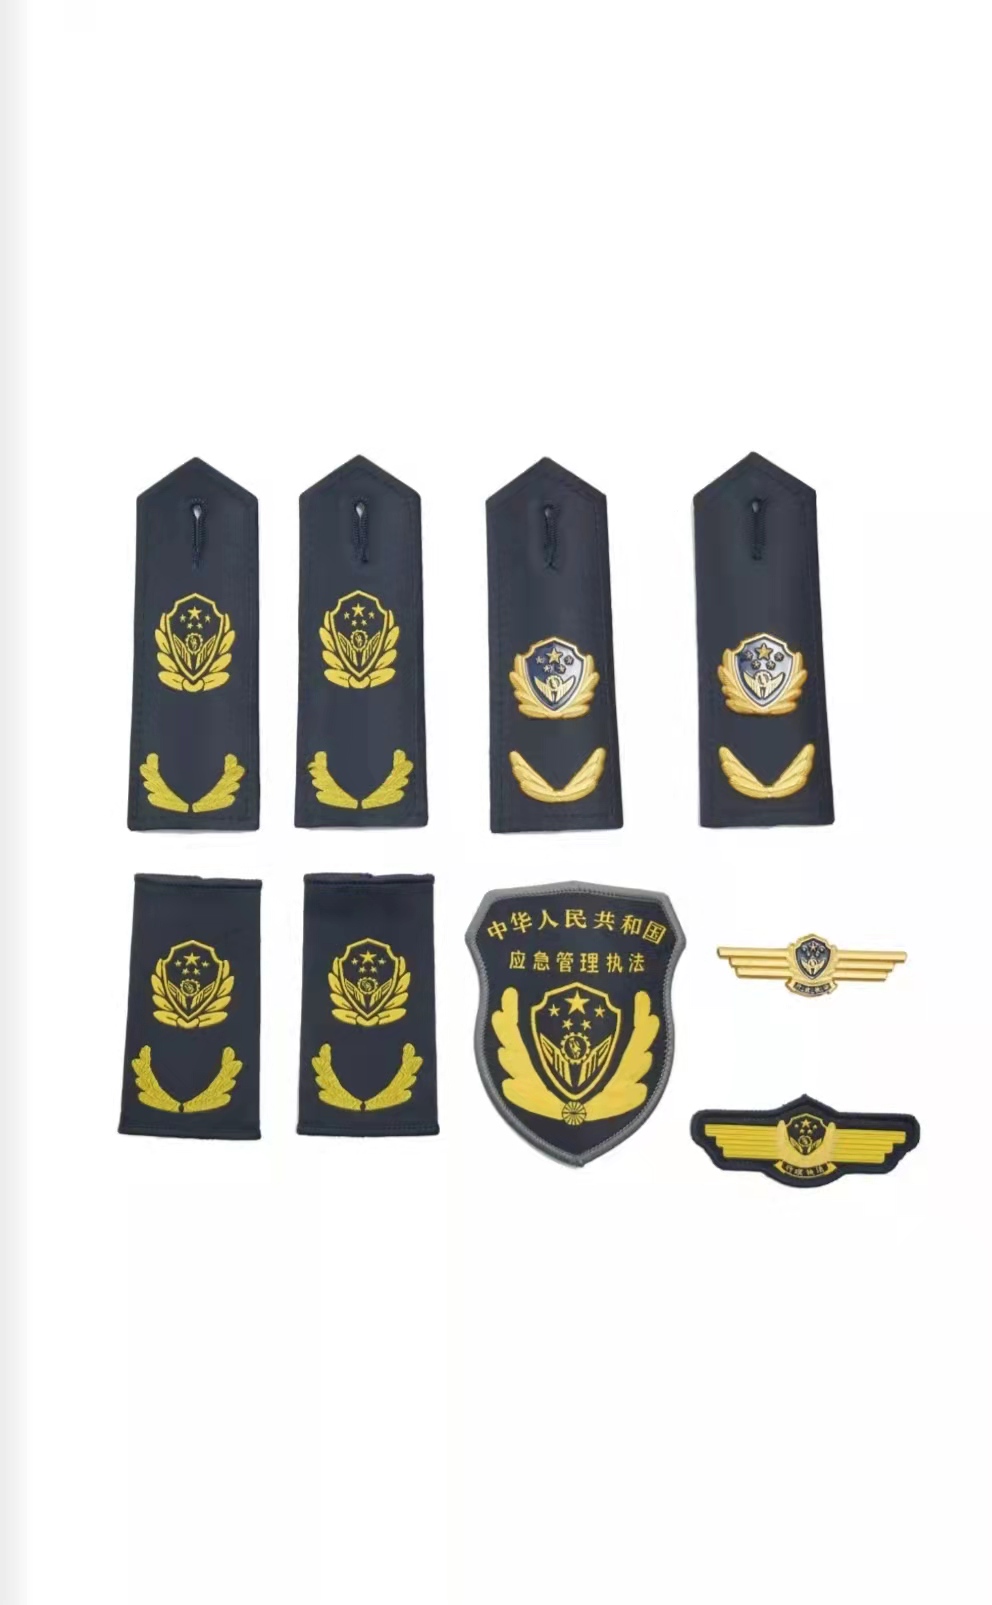 内蒙古应急管理执法制服标志